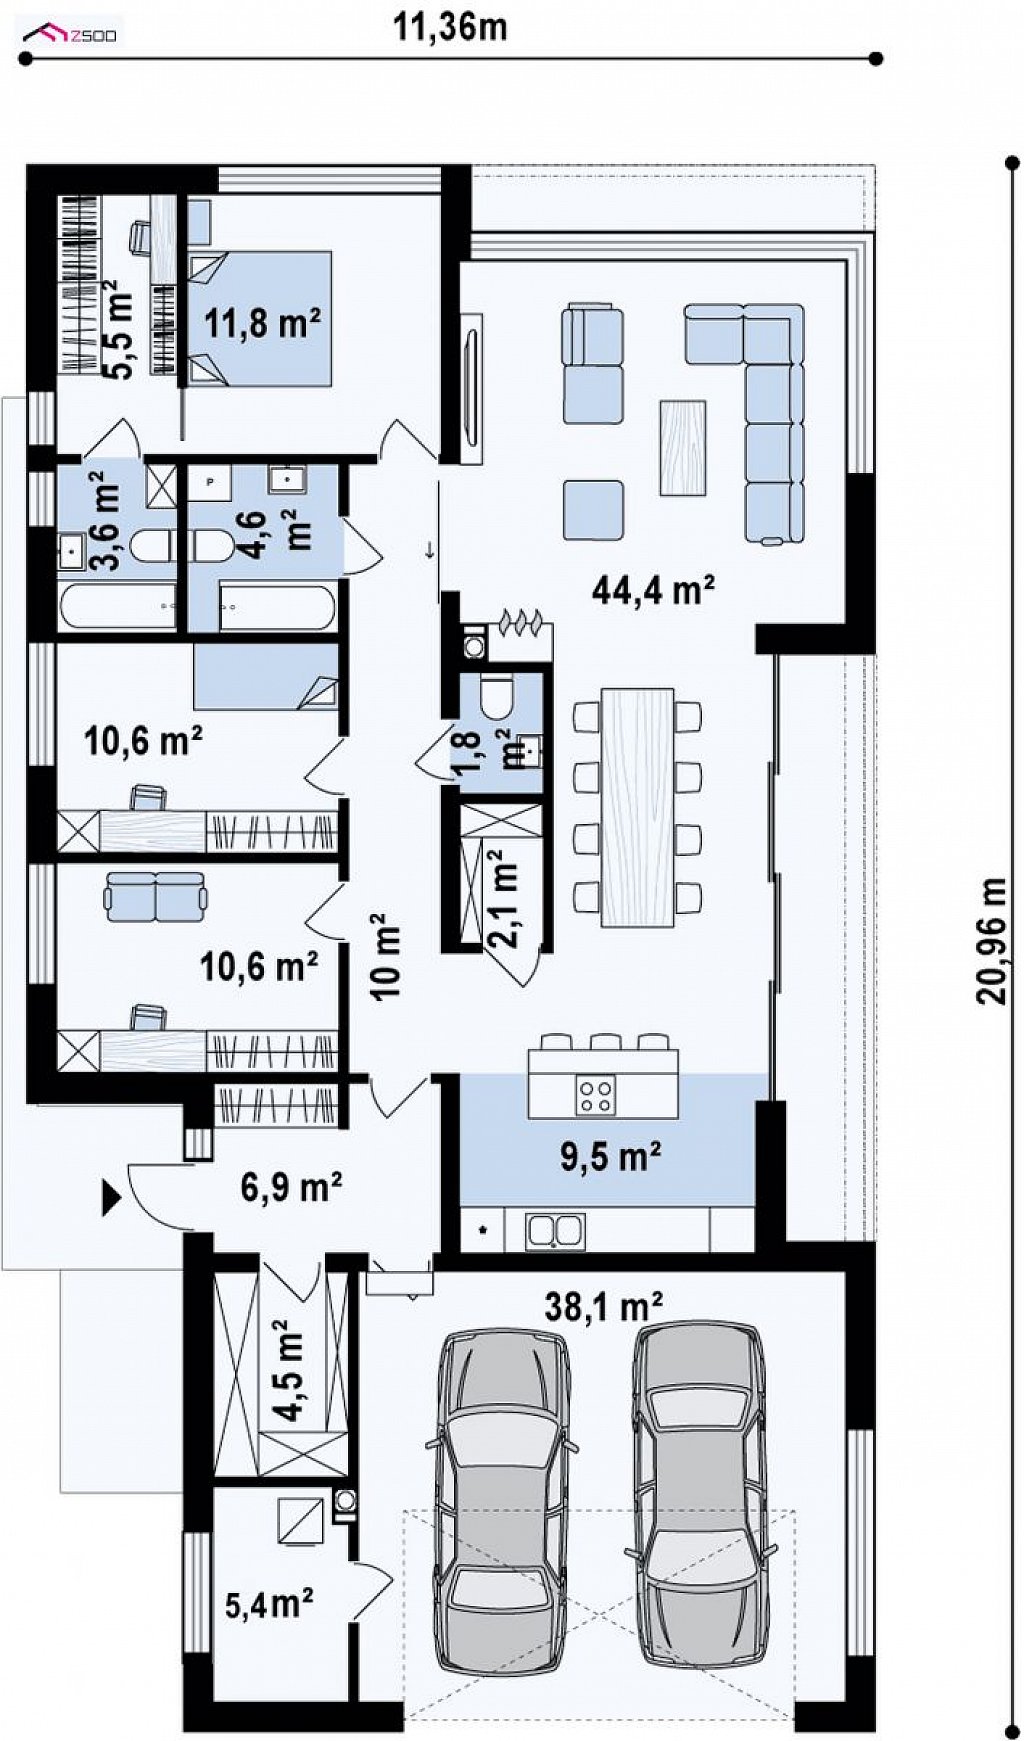 Первый этаж 169,2 м² дома Zx88